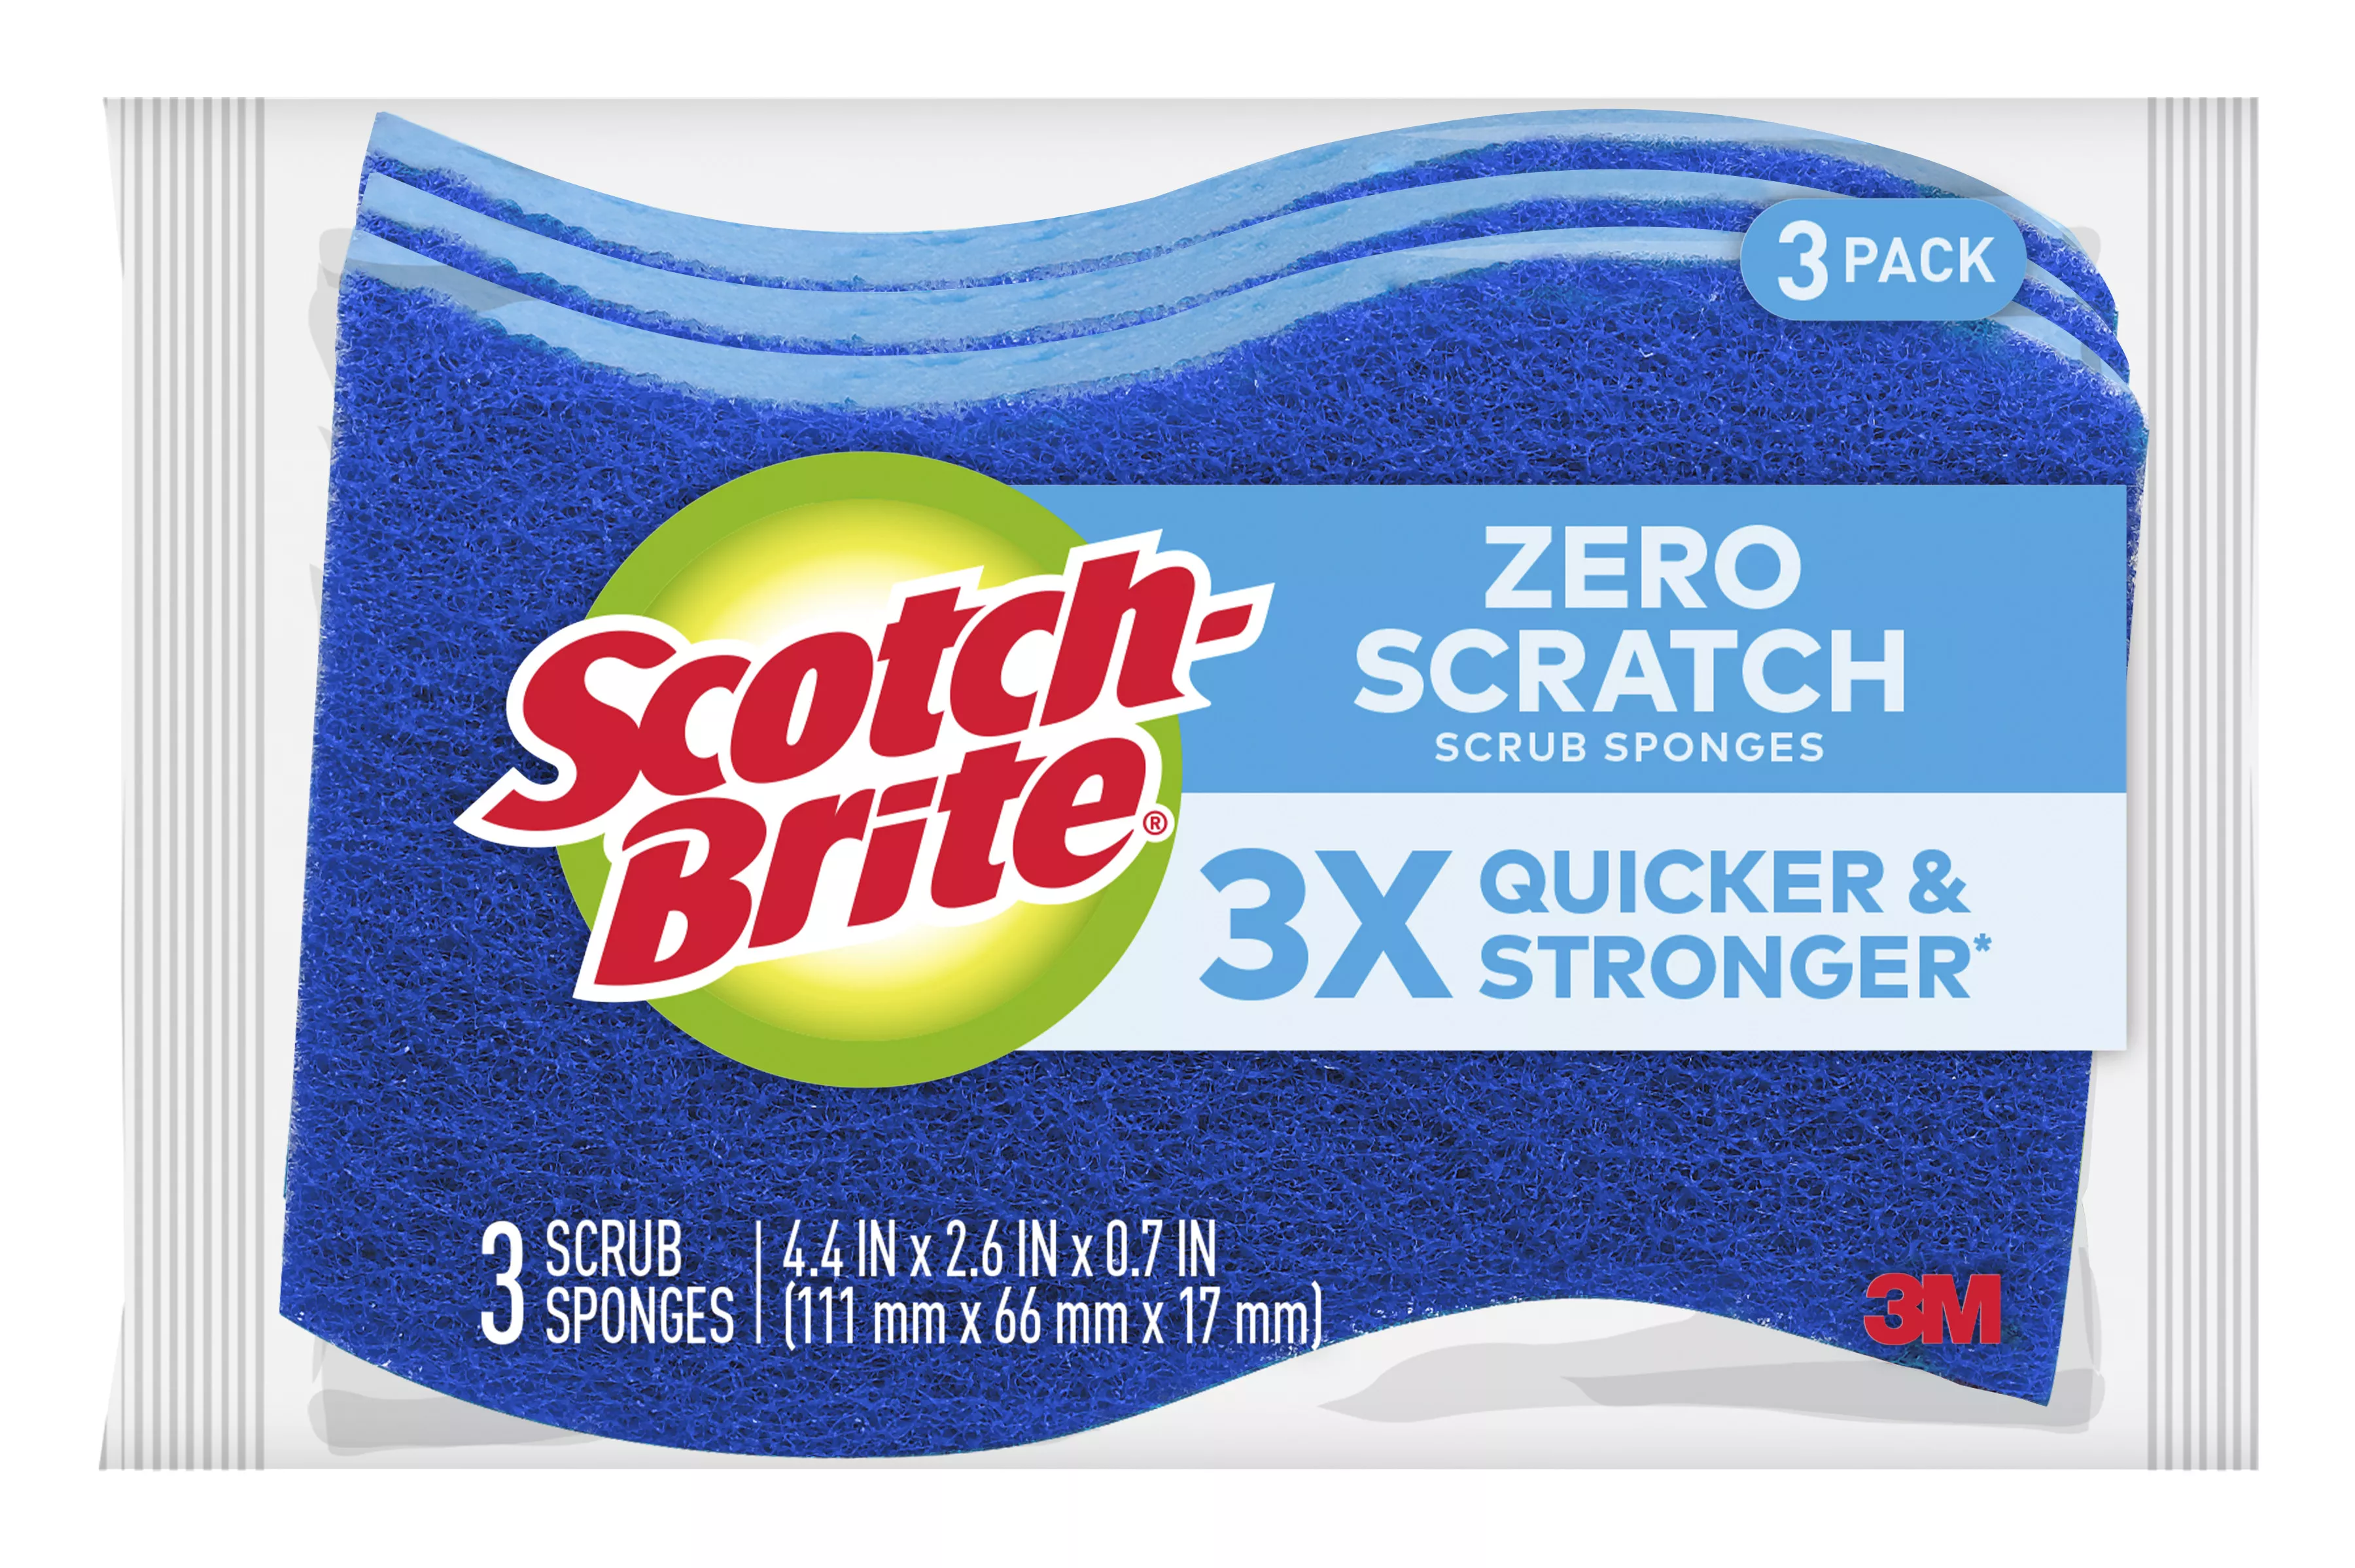 Scotch-Brite® Zero Scratch Scrub Sponge MP-3-8-D, 4.4 in x 2.6 in x 0.7 in (111 mm x 66 mm x 17 mm), 8/3